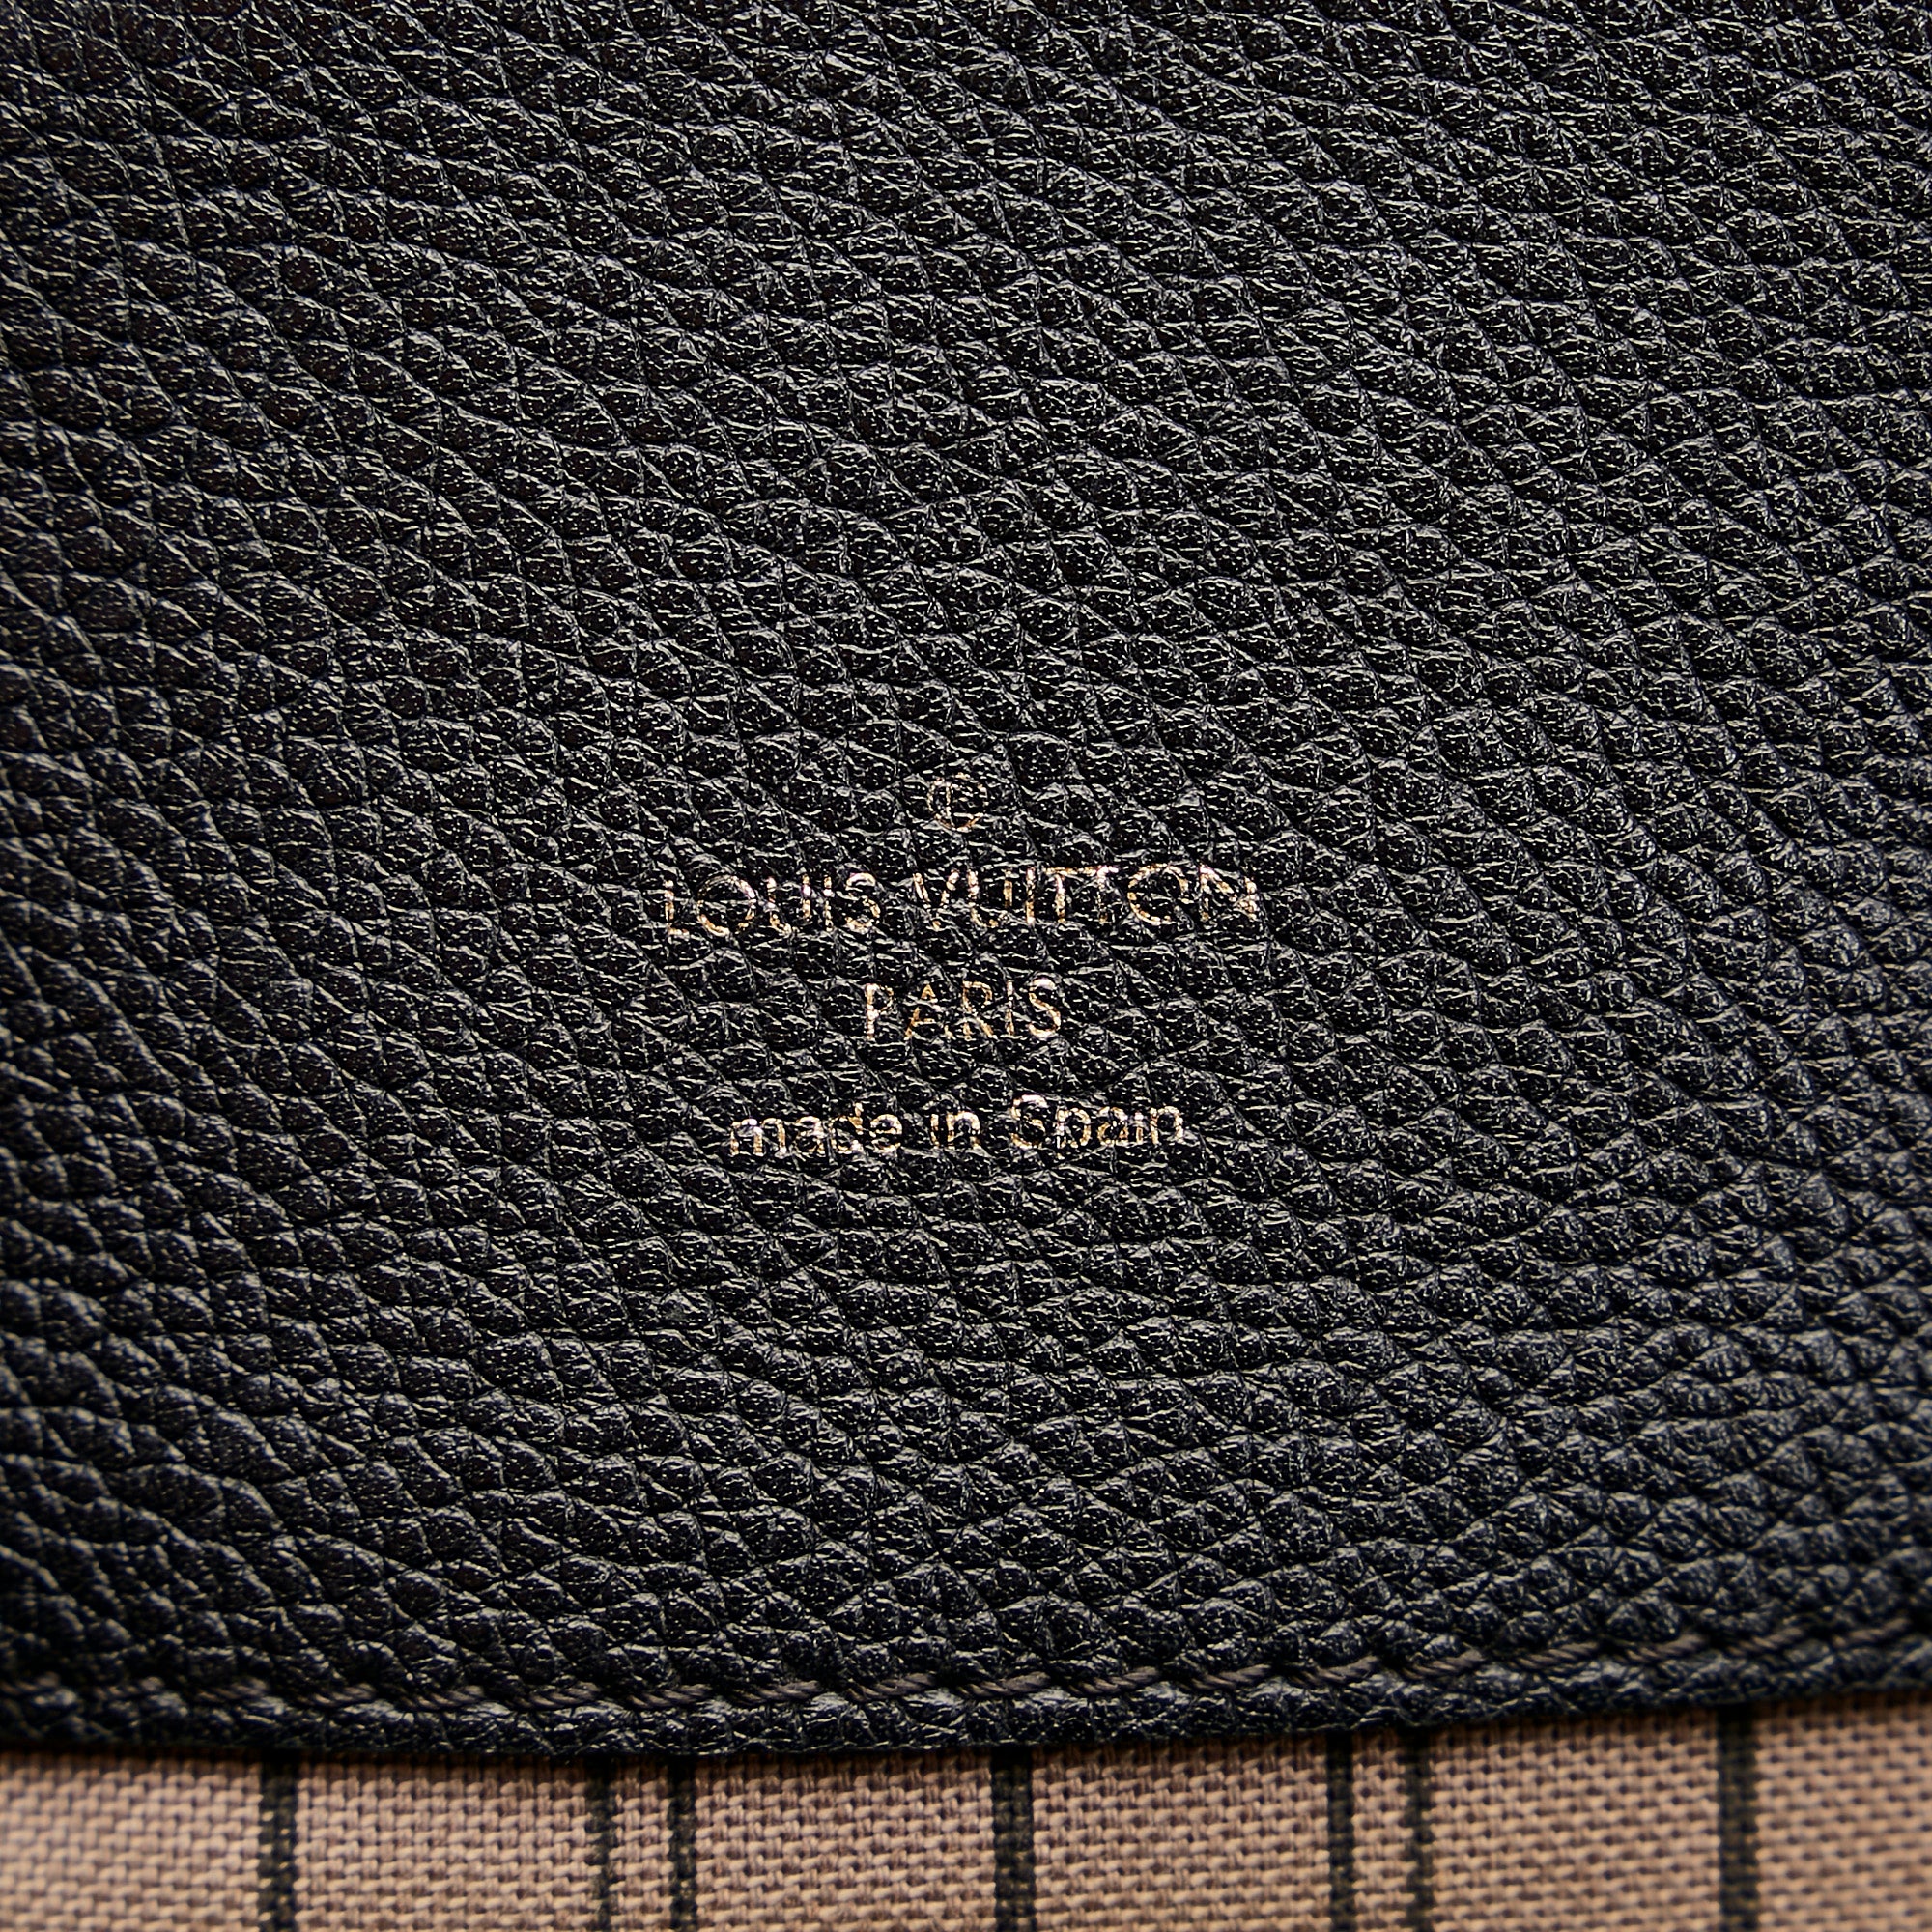 Preloved Louis Vuitton Black Monogram Empreinte Bagatelle Shoulder Bag CA2135 062023 - $400 OFF LIVE SHOW